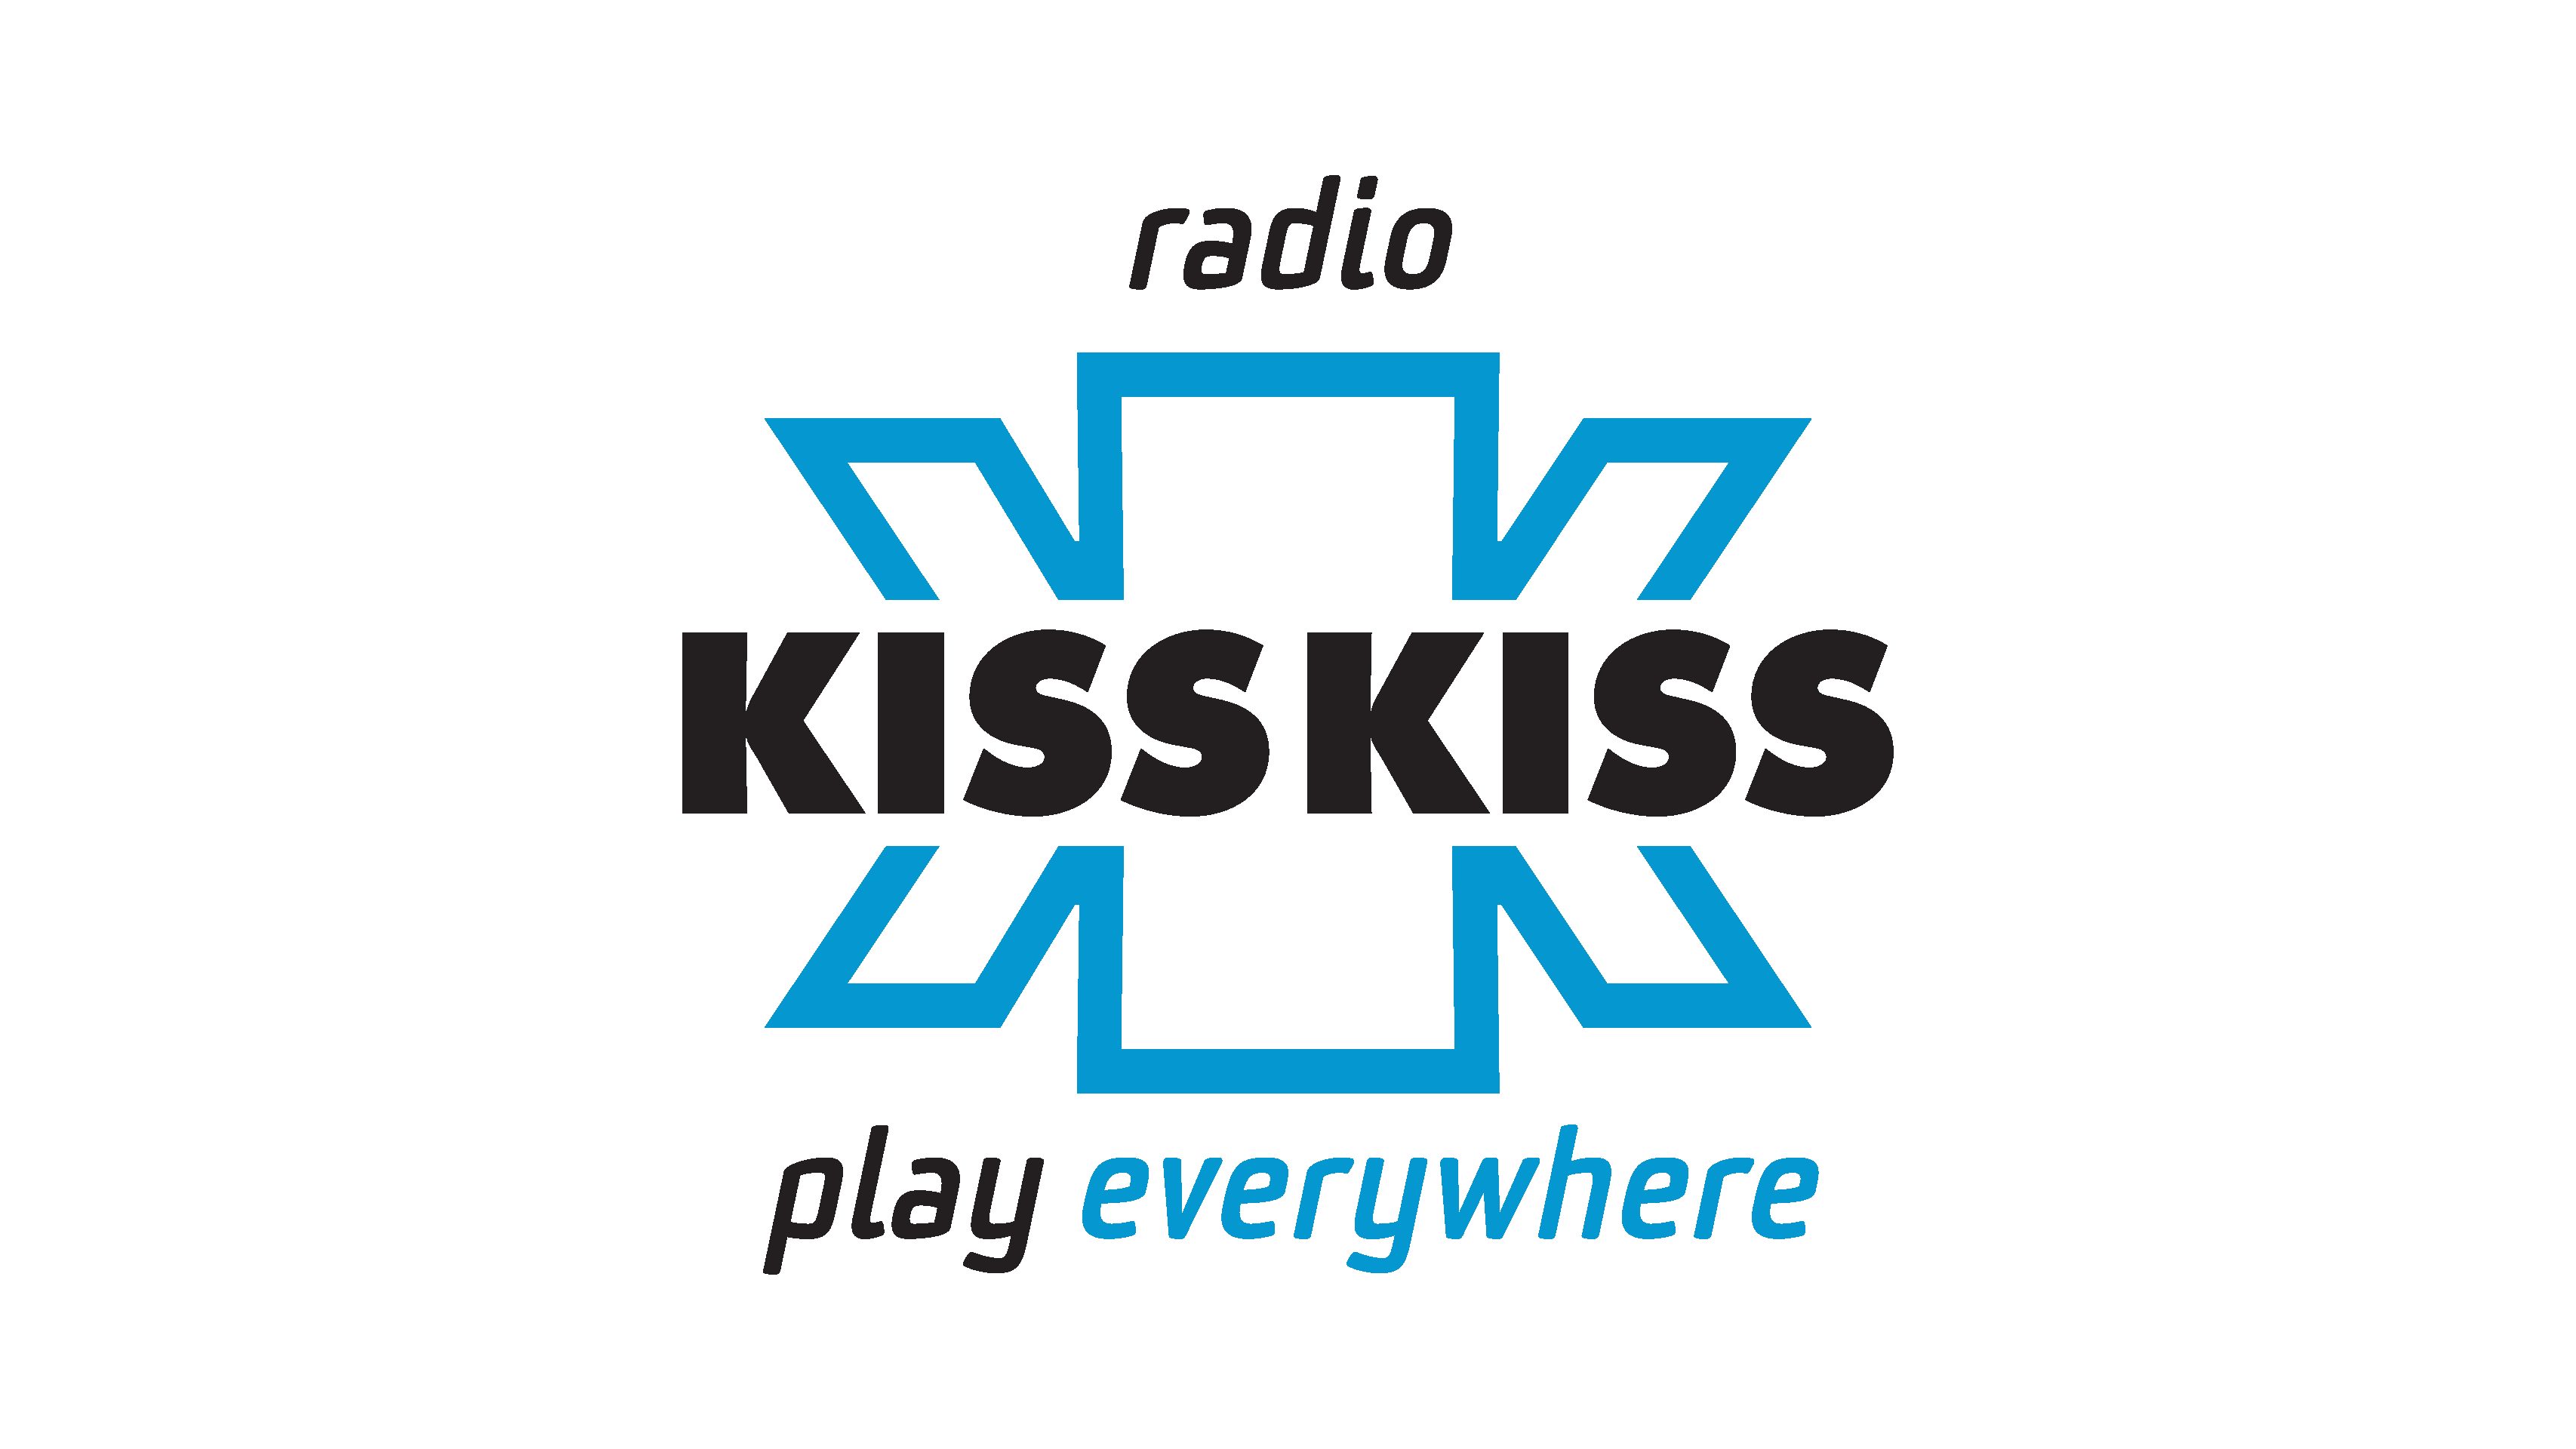 Radio Kiss Kiss da record: abbattutto il muro dei 3 milioni di ascoltatori